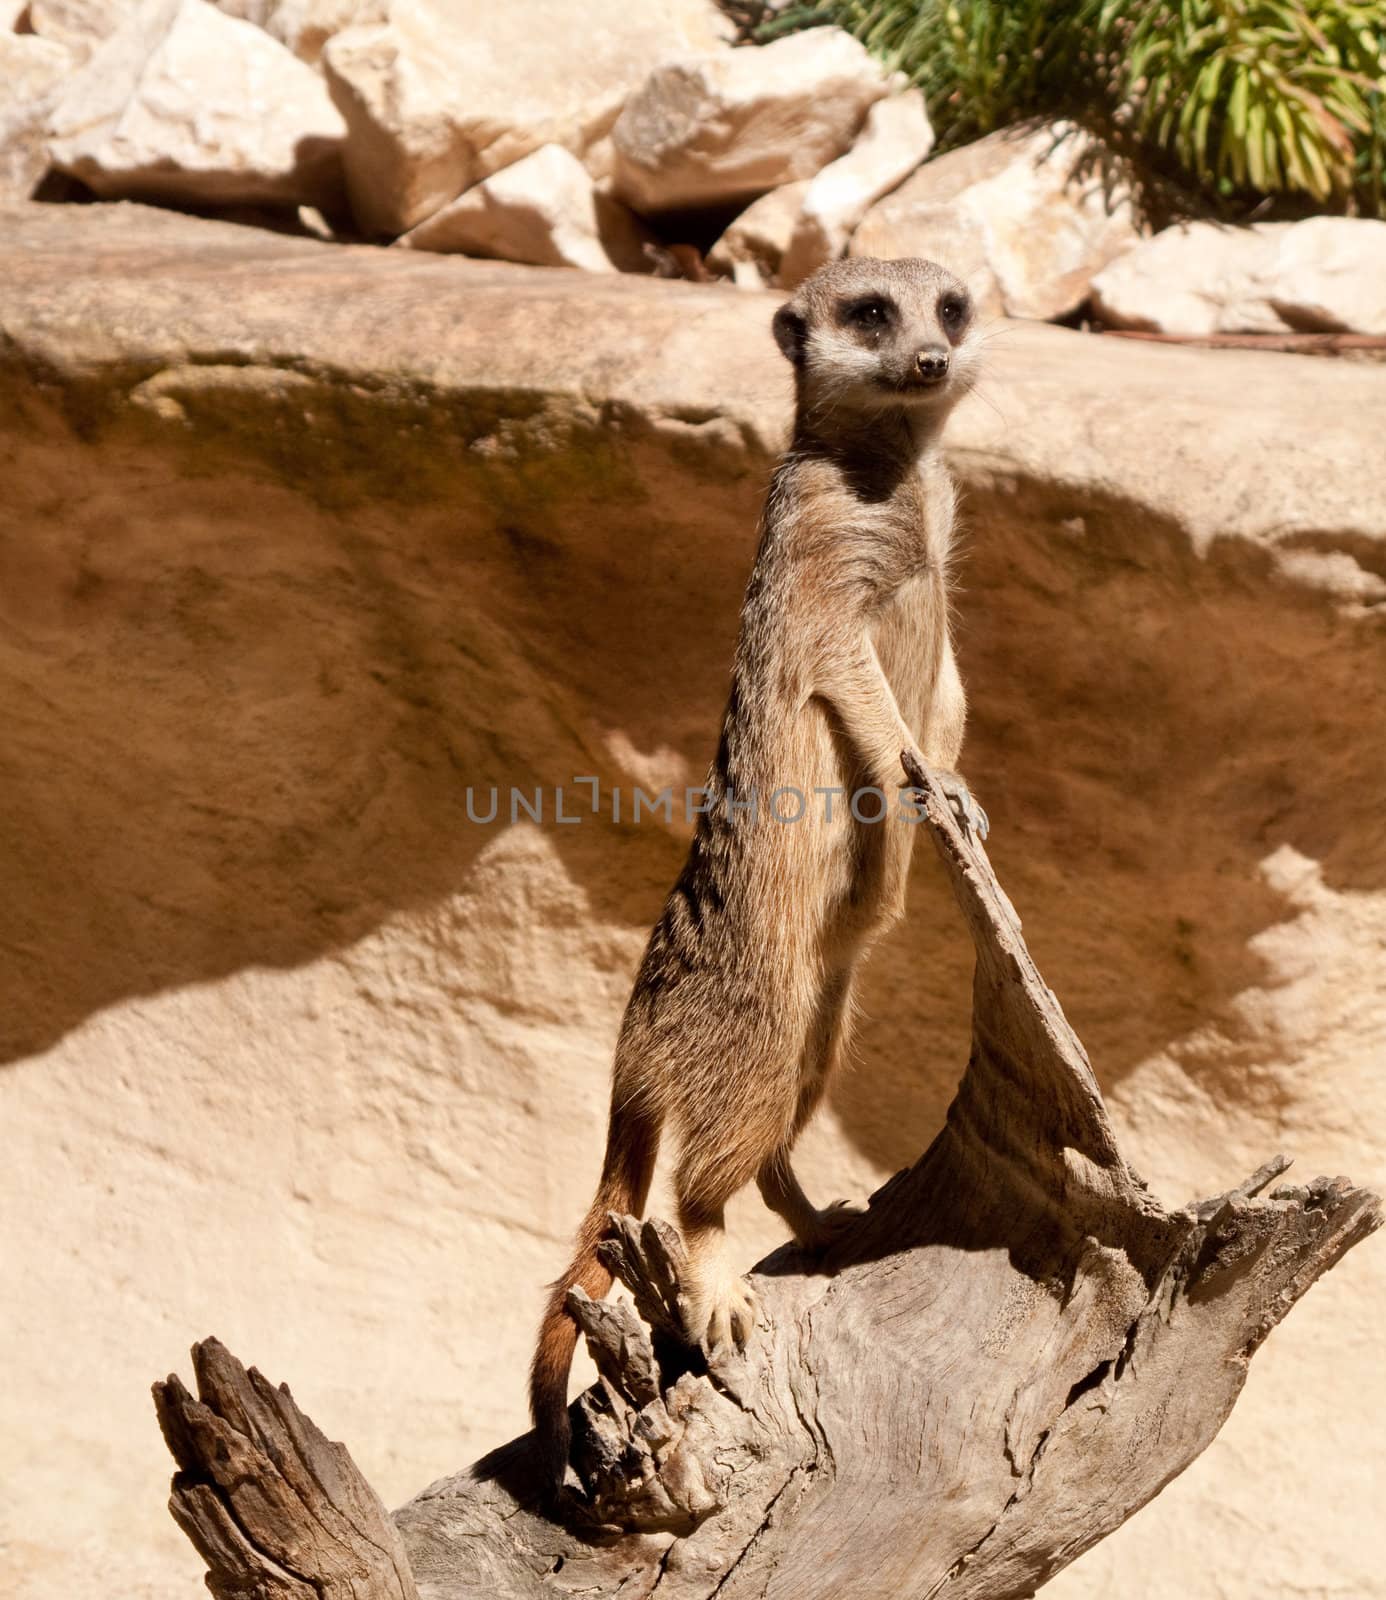 Meerkat standing on log by steheap